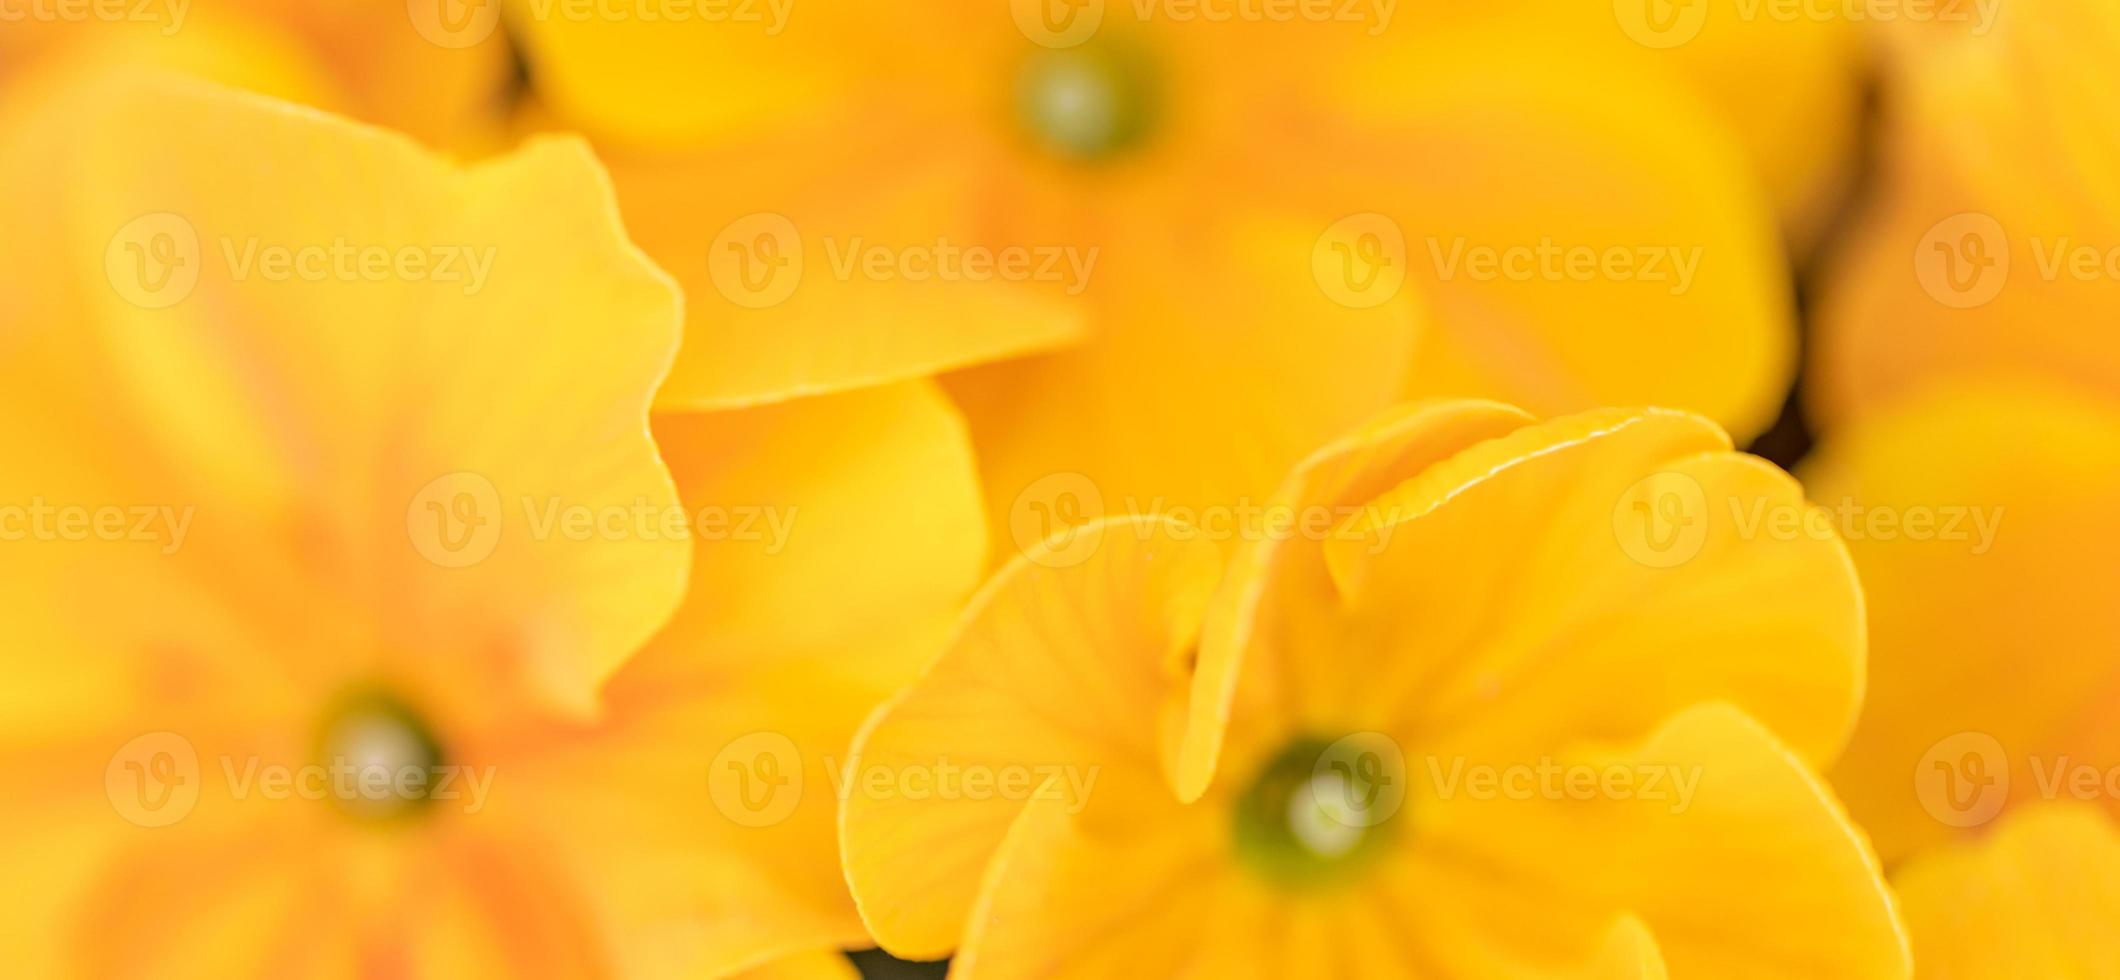 schöne sanfte frühlingssommerblumen gelbe und orange farbe. Inspirationsnaturhintergrund, blühende Blumennahaufnahme. florale Desktop-Banner-Postkarte. romantisches weiches sanftes künstlerisches bild, kopierraum foto